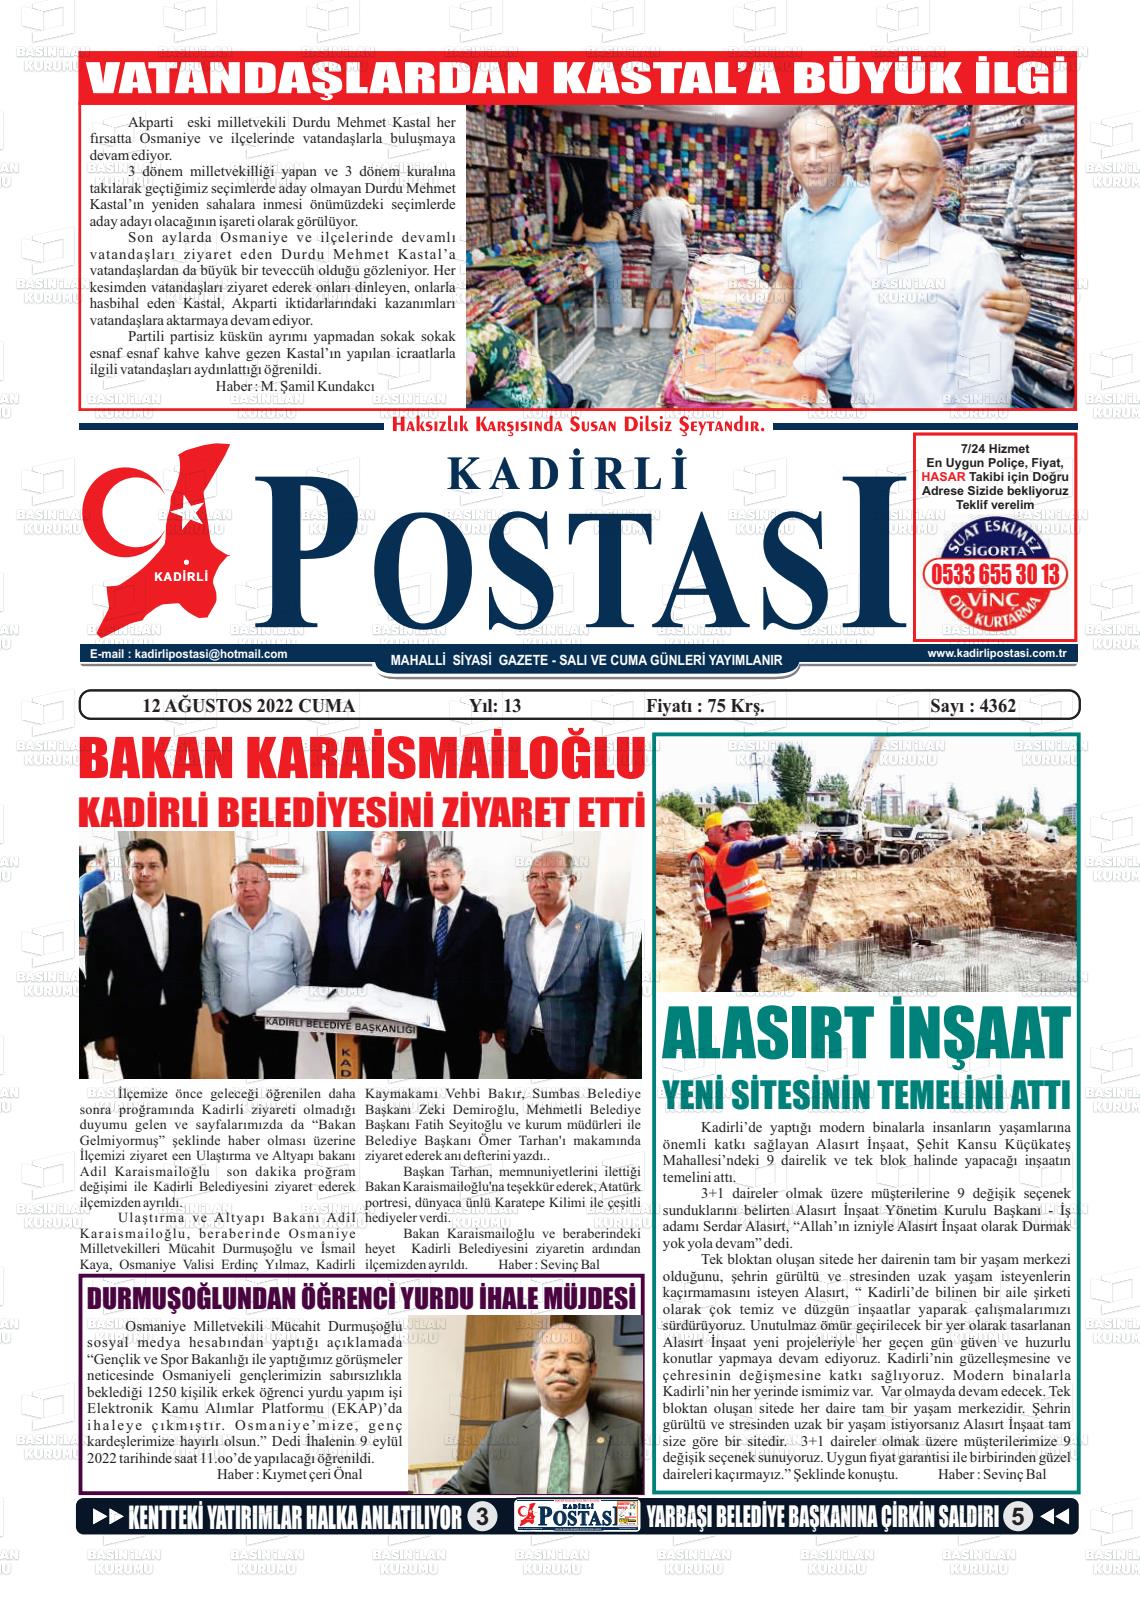 12 Ağustos 2022 Kadirli Postası Gazete Manşeti